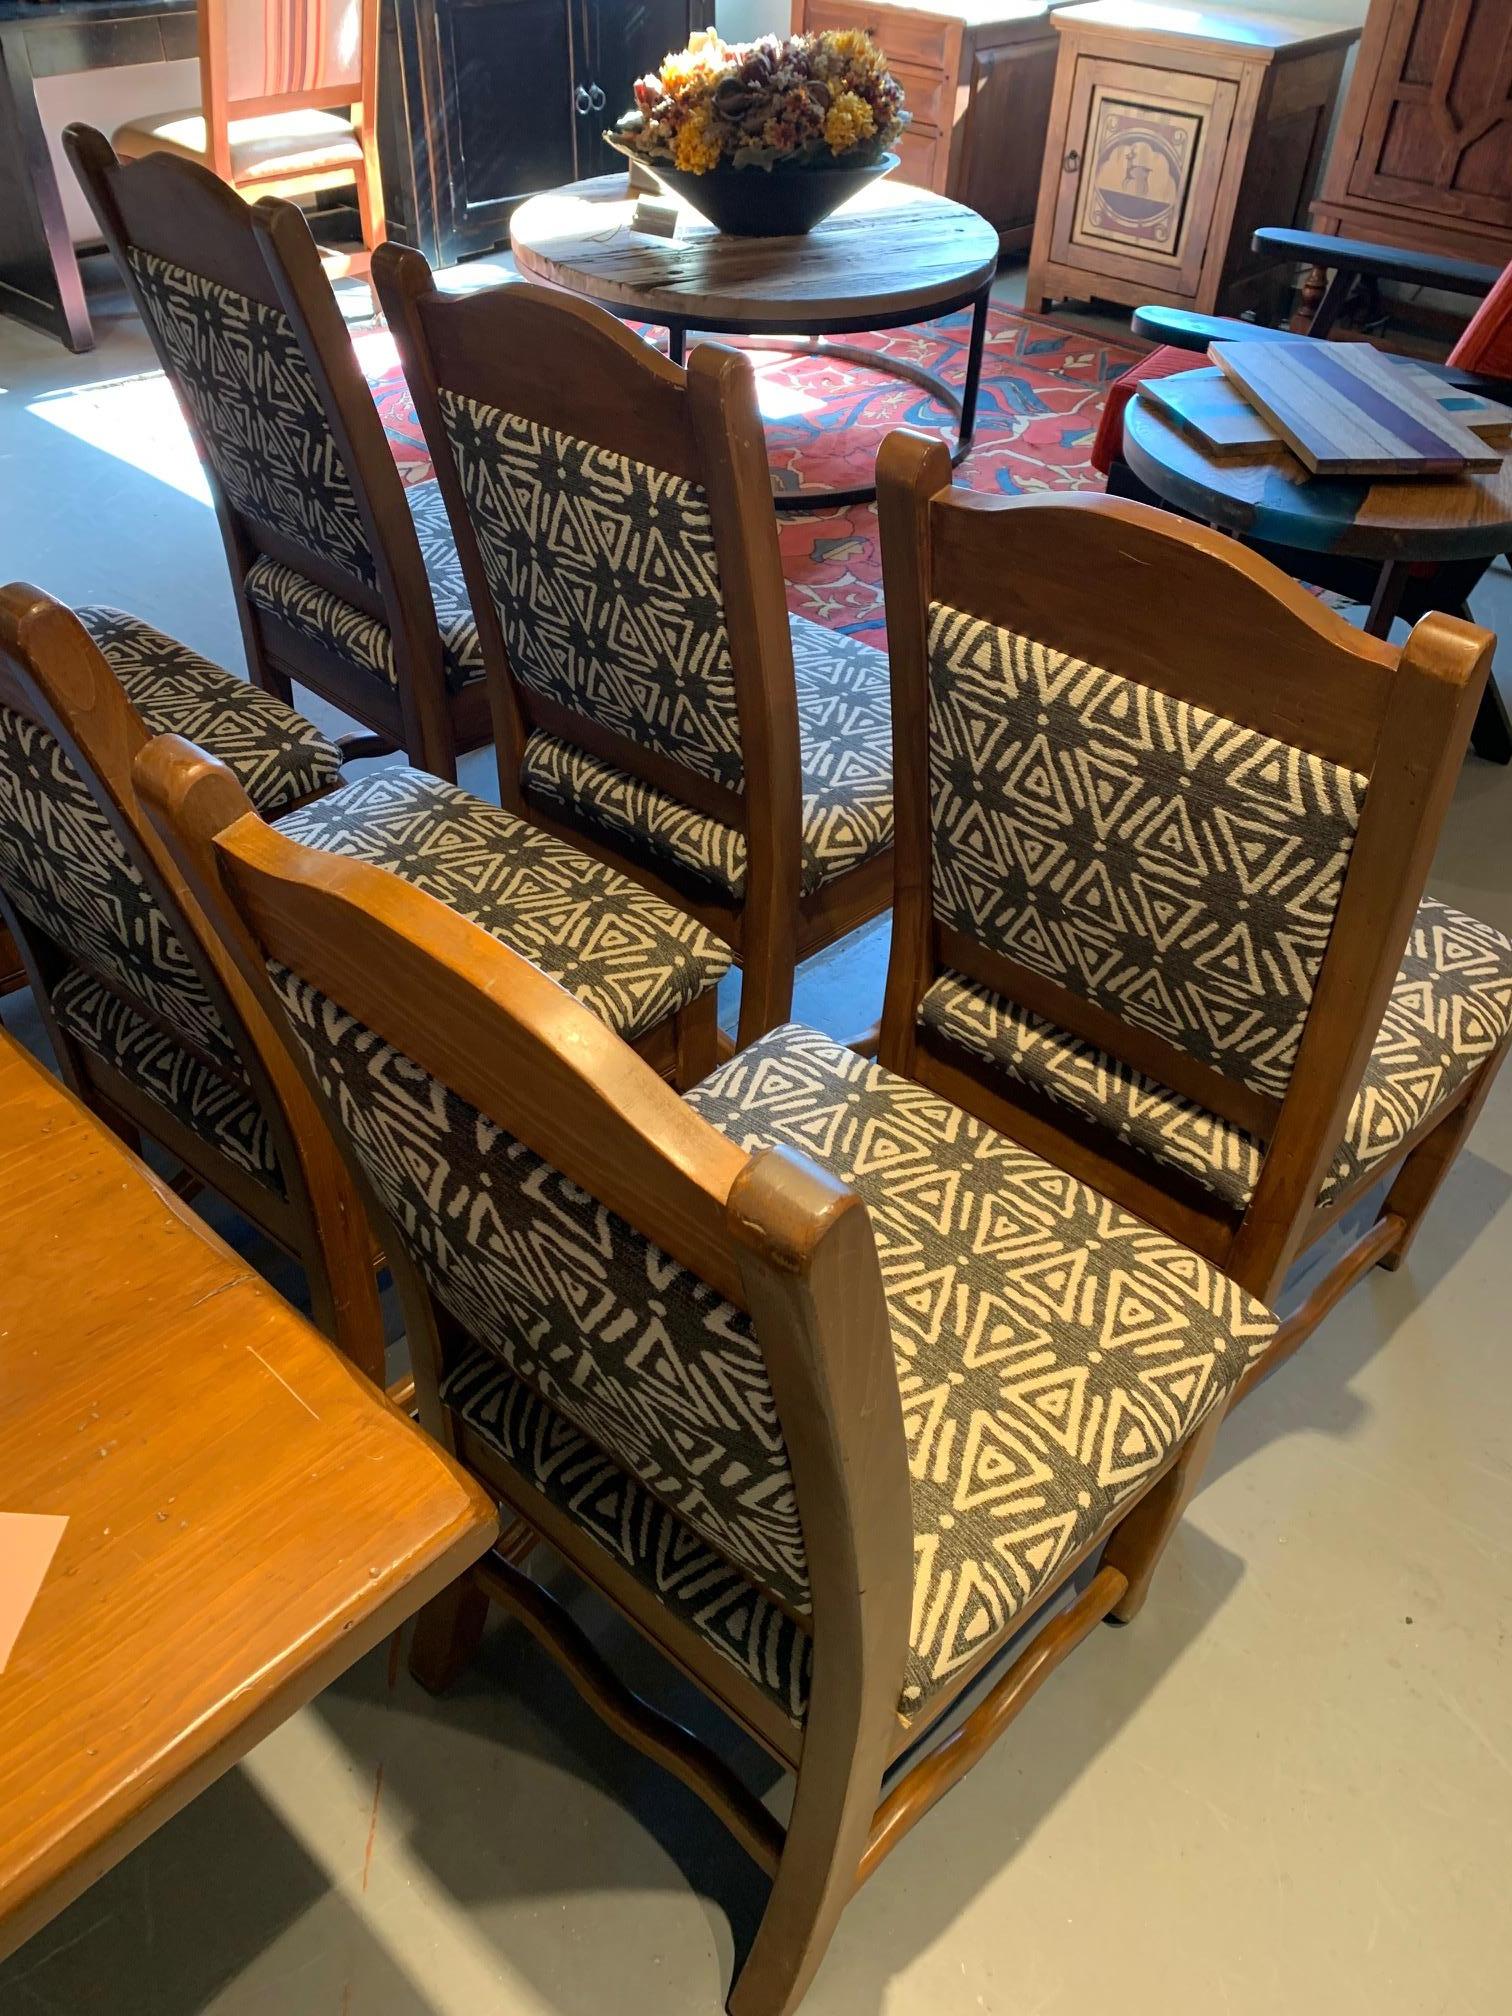 Ensemble de 6 chaises de salle à manger Del Marli. Il s'agit de modèles d'exposition qui présentent des signes d'utilisation. Détails sculptés à la main et entièrement rembourrés.

Complétez l'ensemble avec le double guéridon Custom. Disponible sur